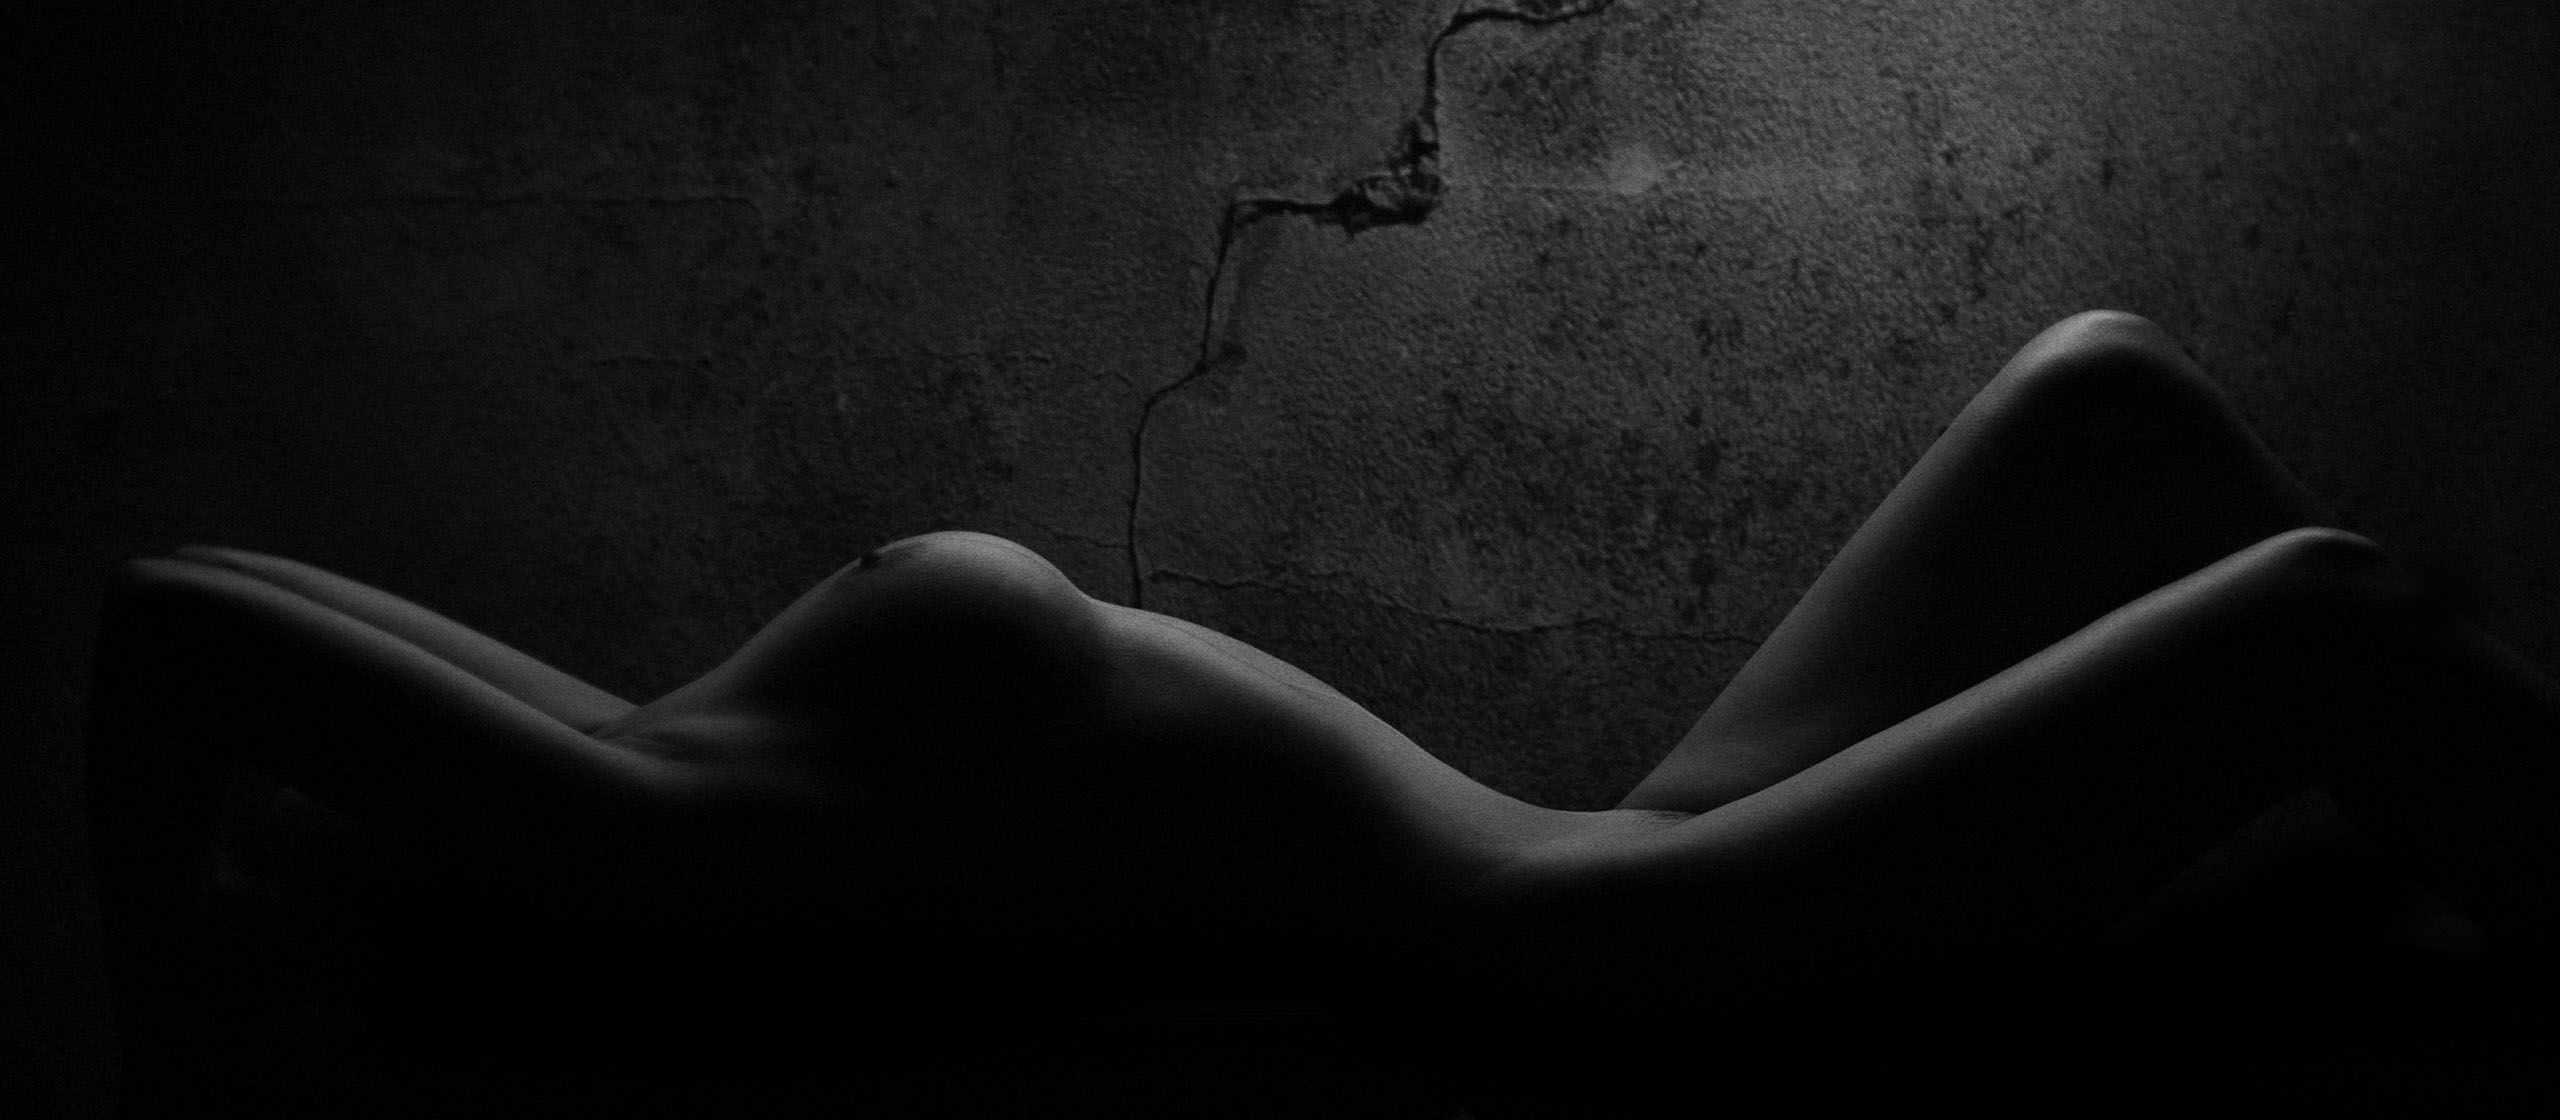 Femme nue dans une pièce sombre, les seins mis en valeur par la lumière